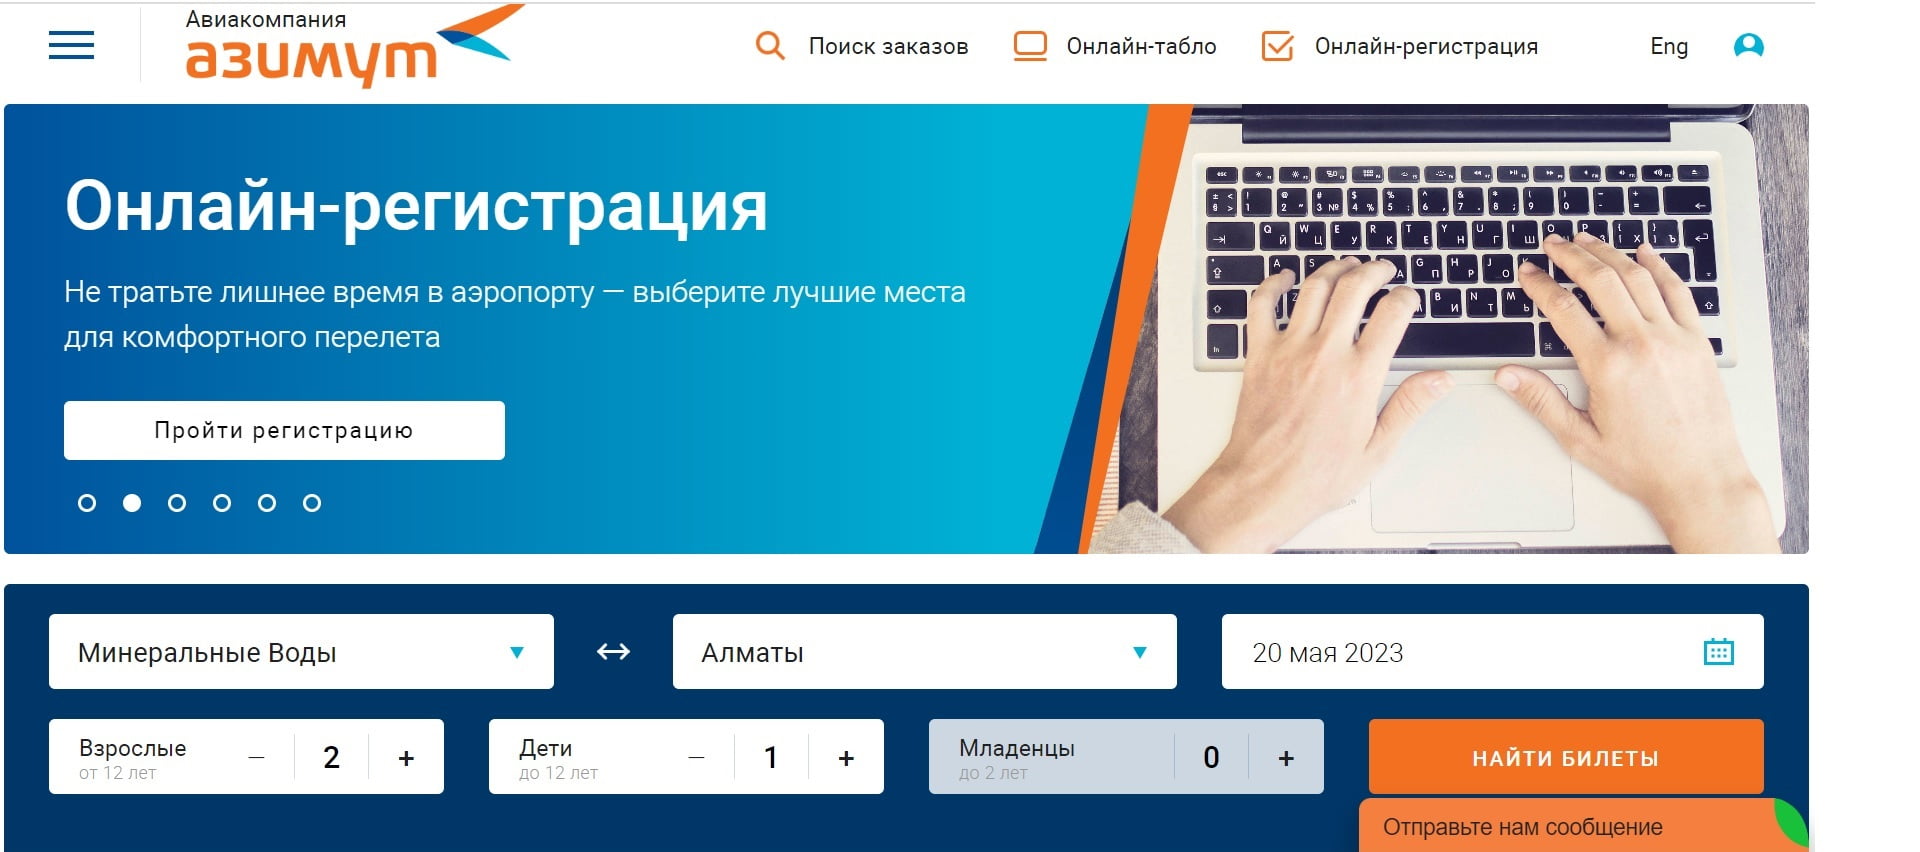 Онлайн регистрация на рейс из Пулково через интернет.